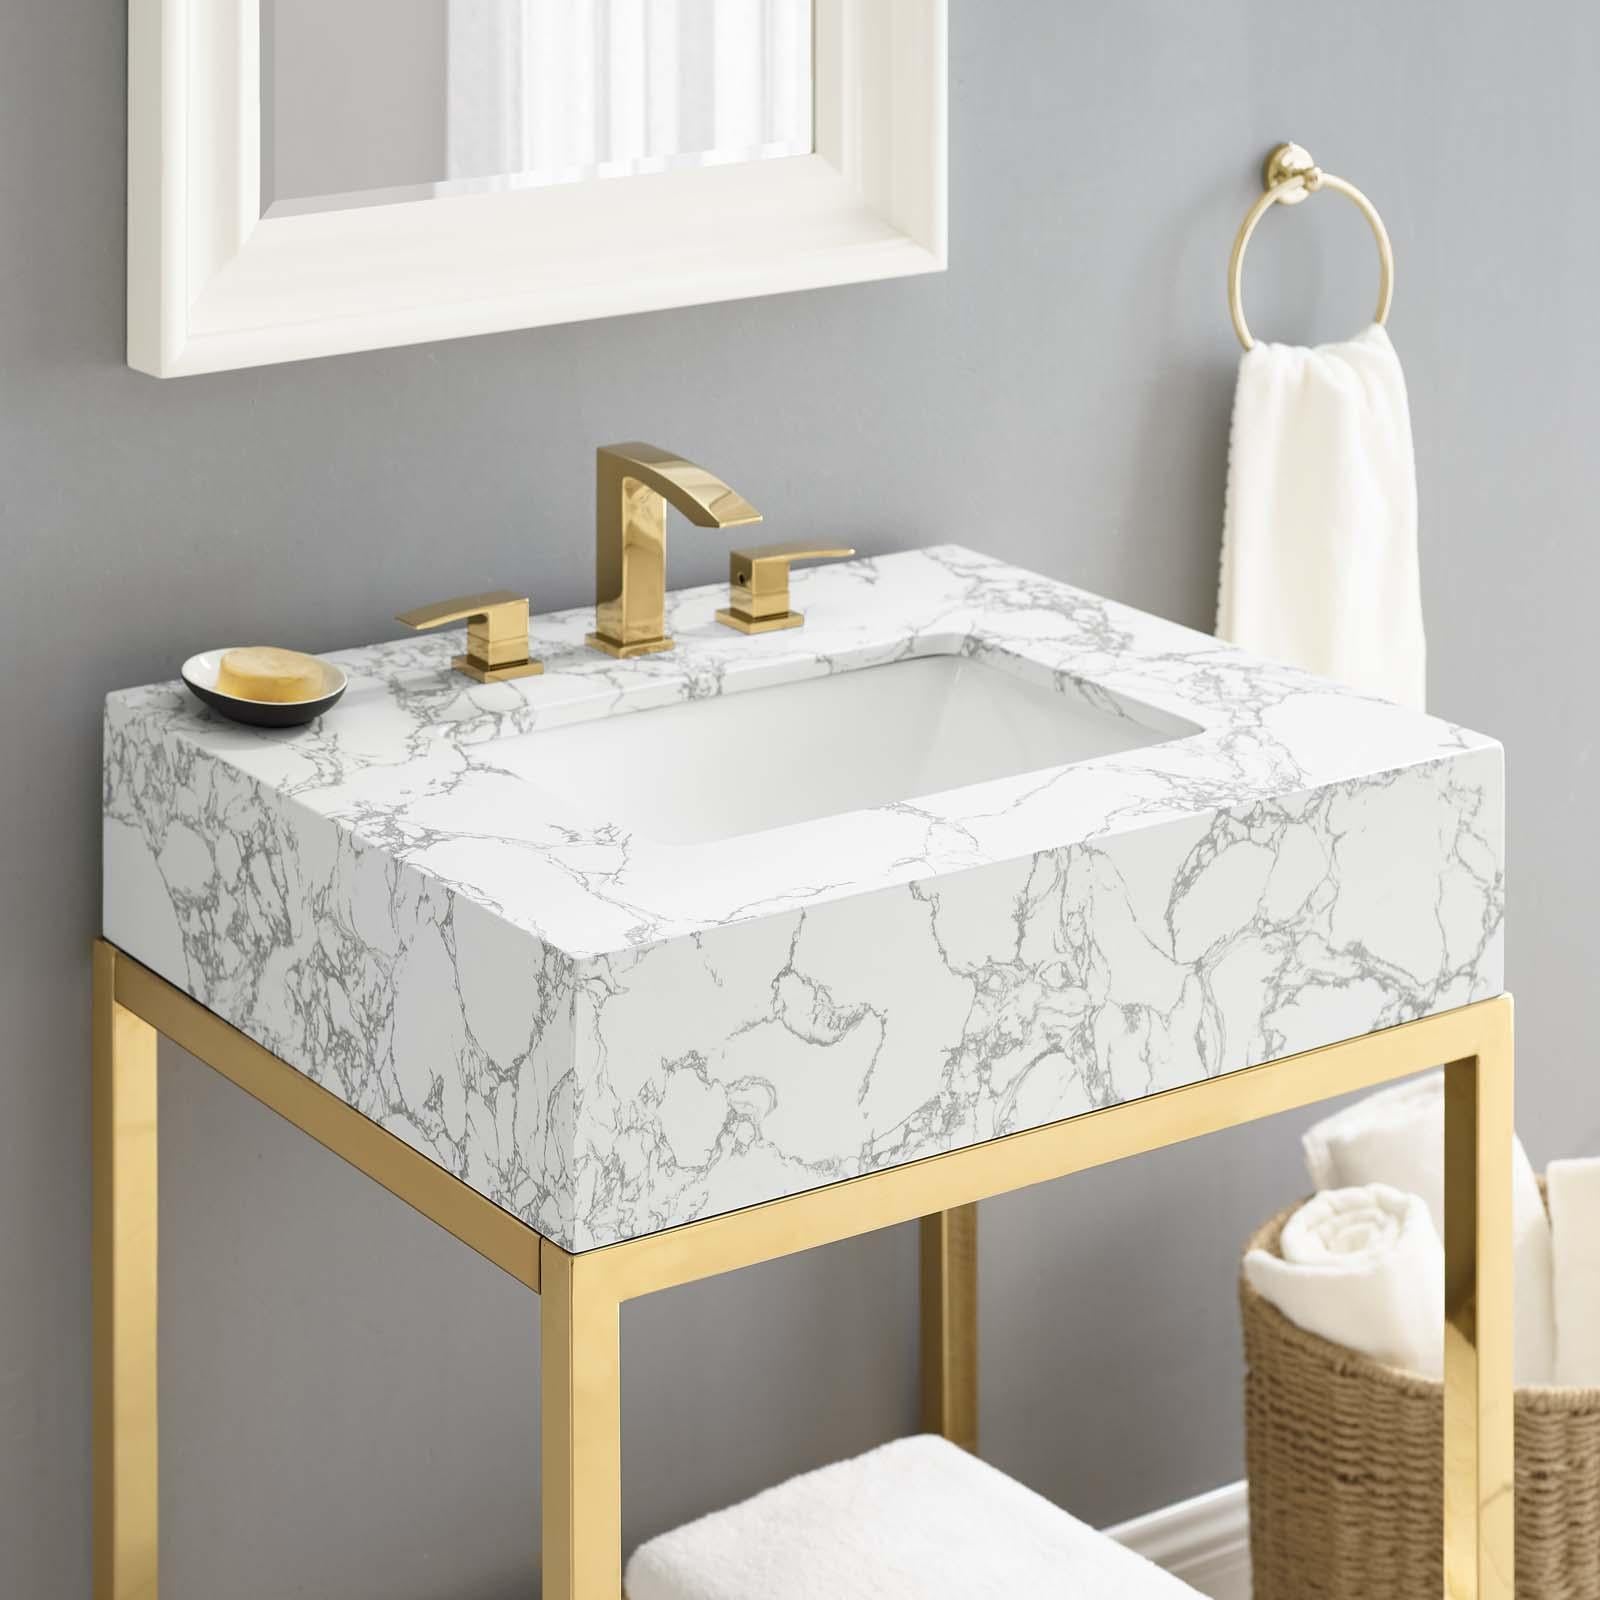 Modway Furniture Modern Kingsley 26" Gold Stainless Steel Bathroom Vanity - EEI-3995